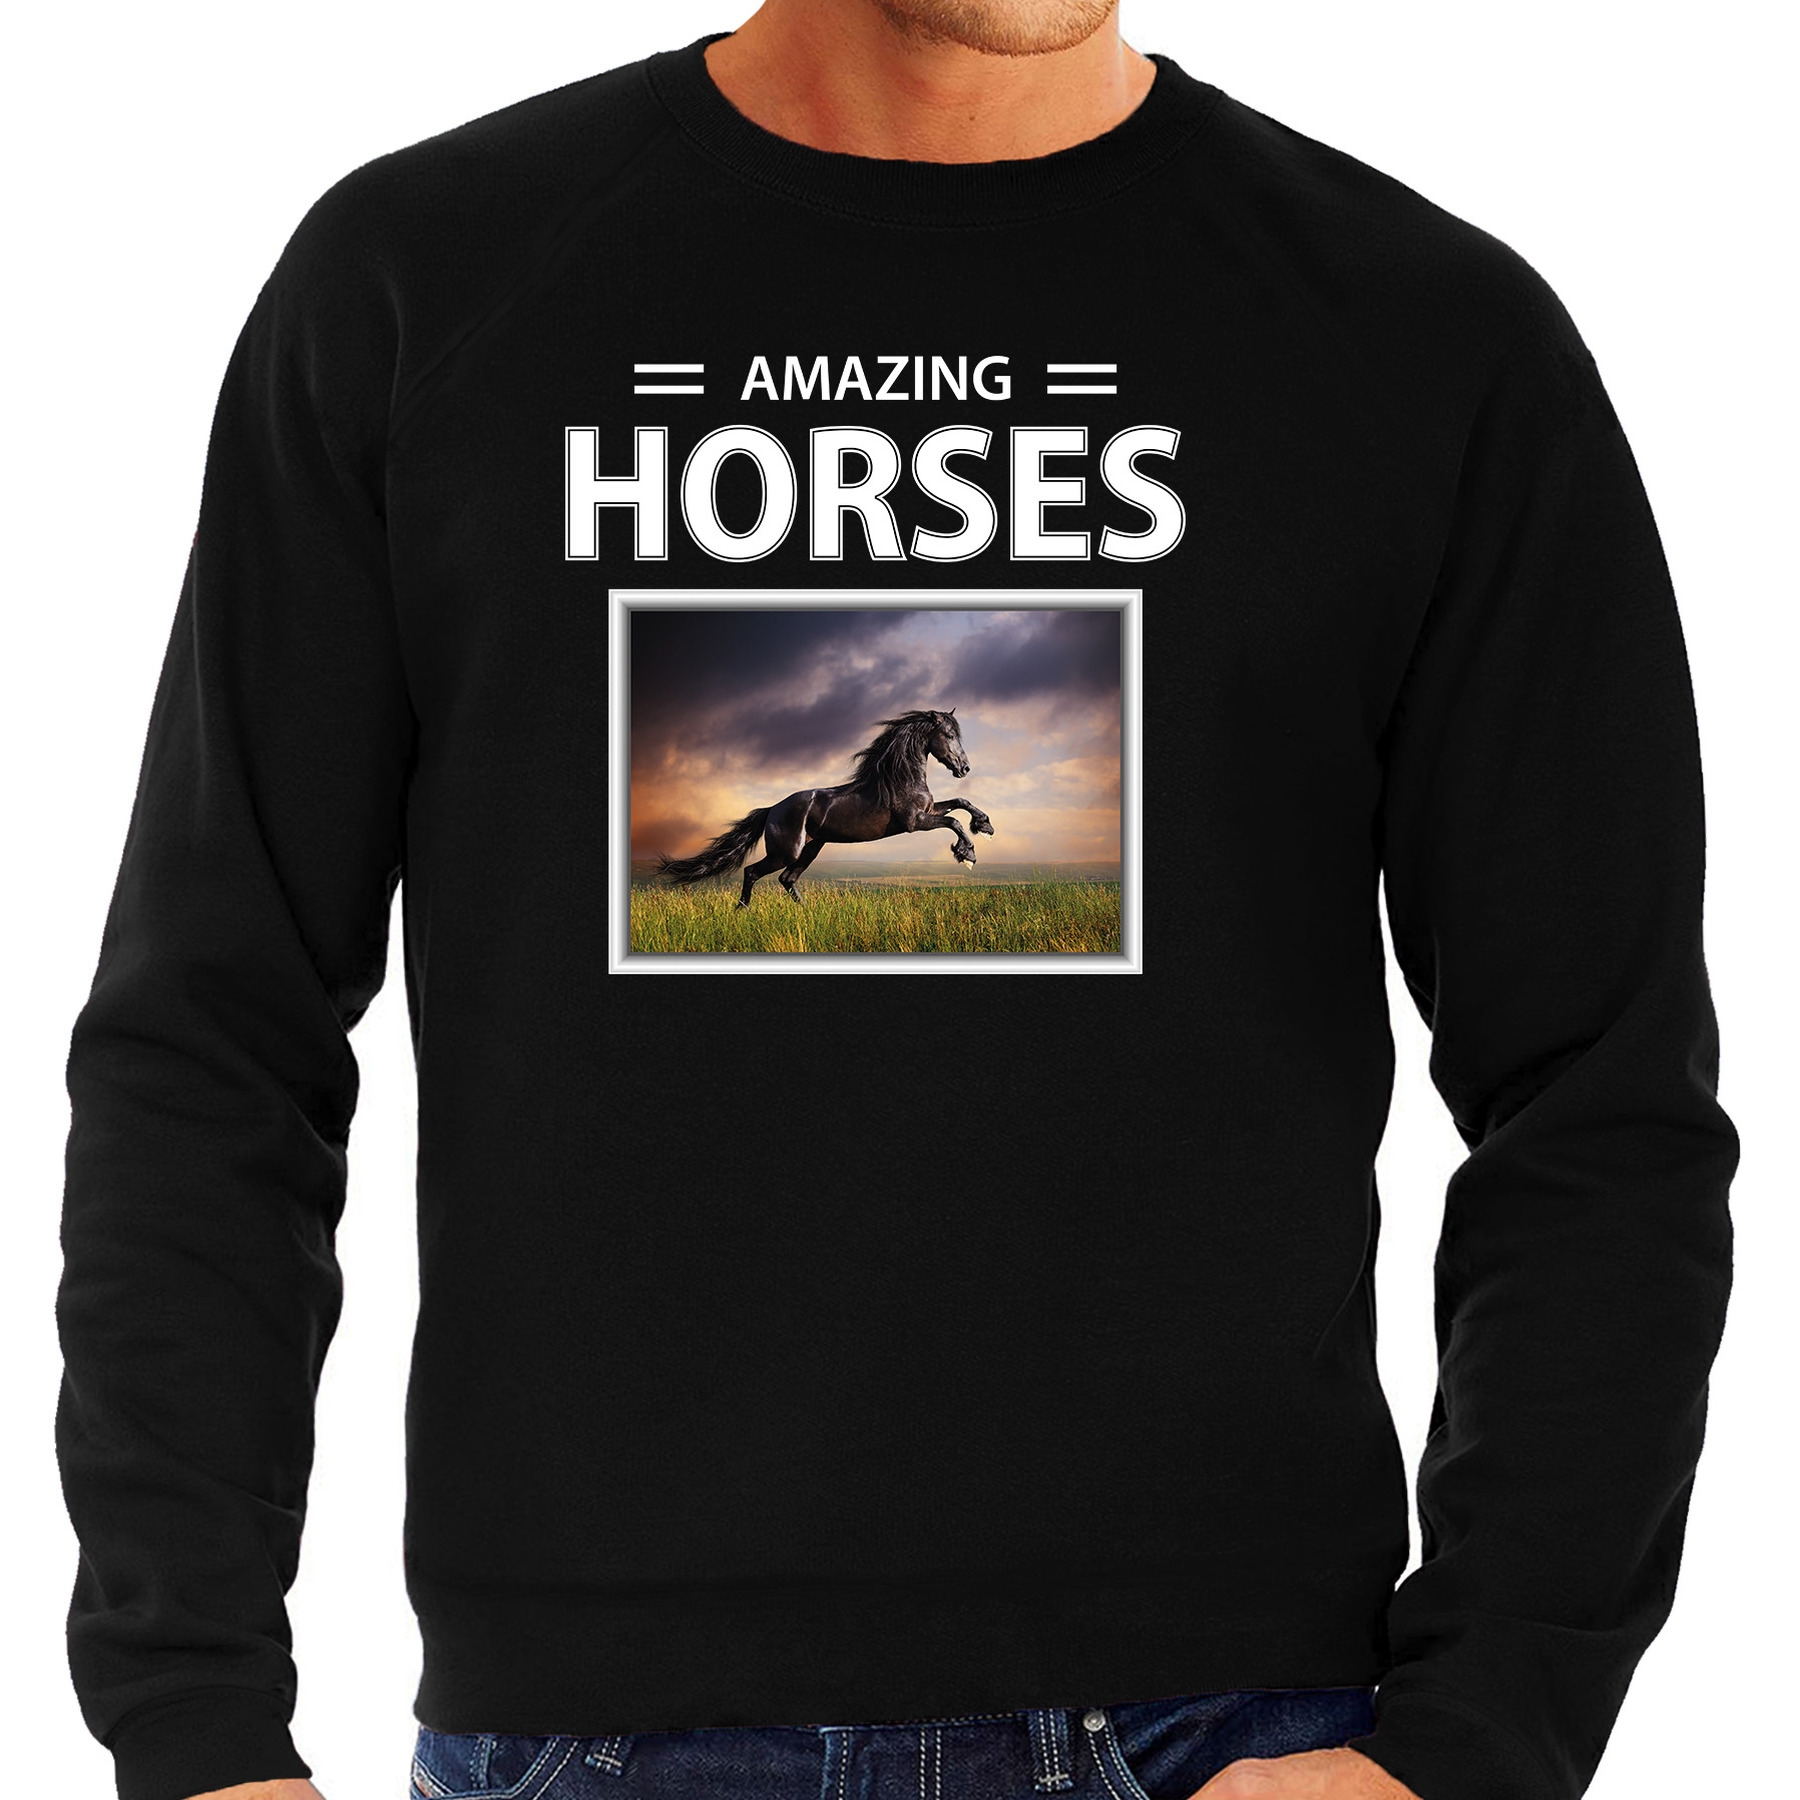 Zwarte paarden sweater - trui met dieren foto amazing horses zwart voor heren